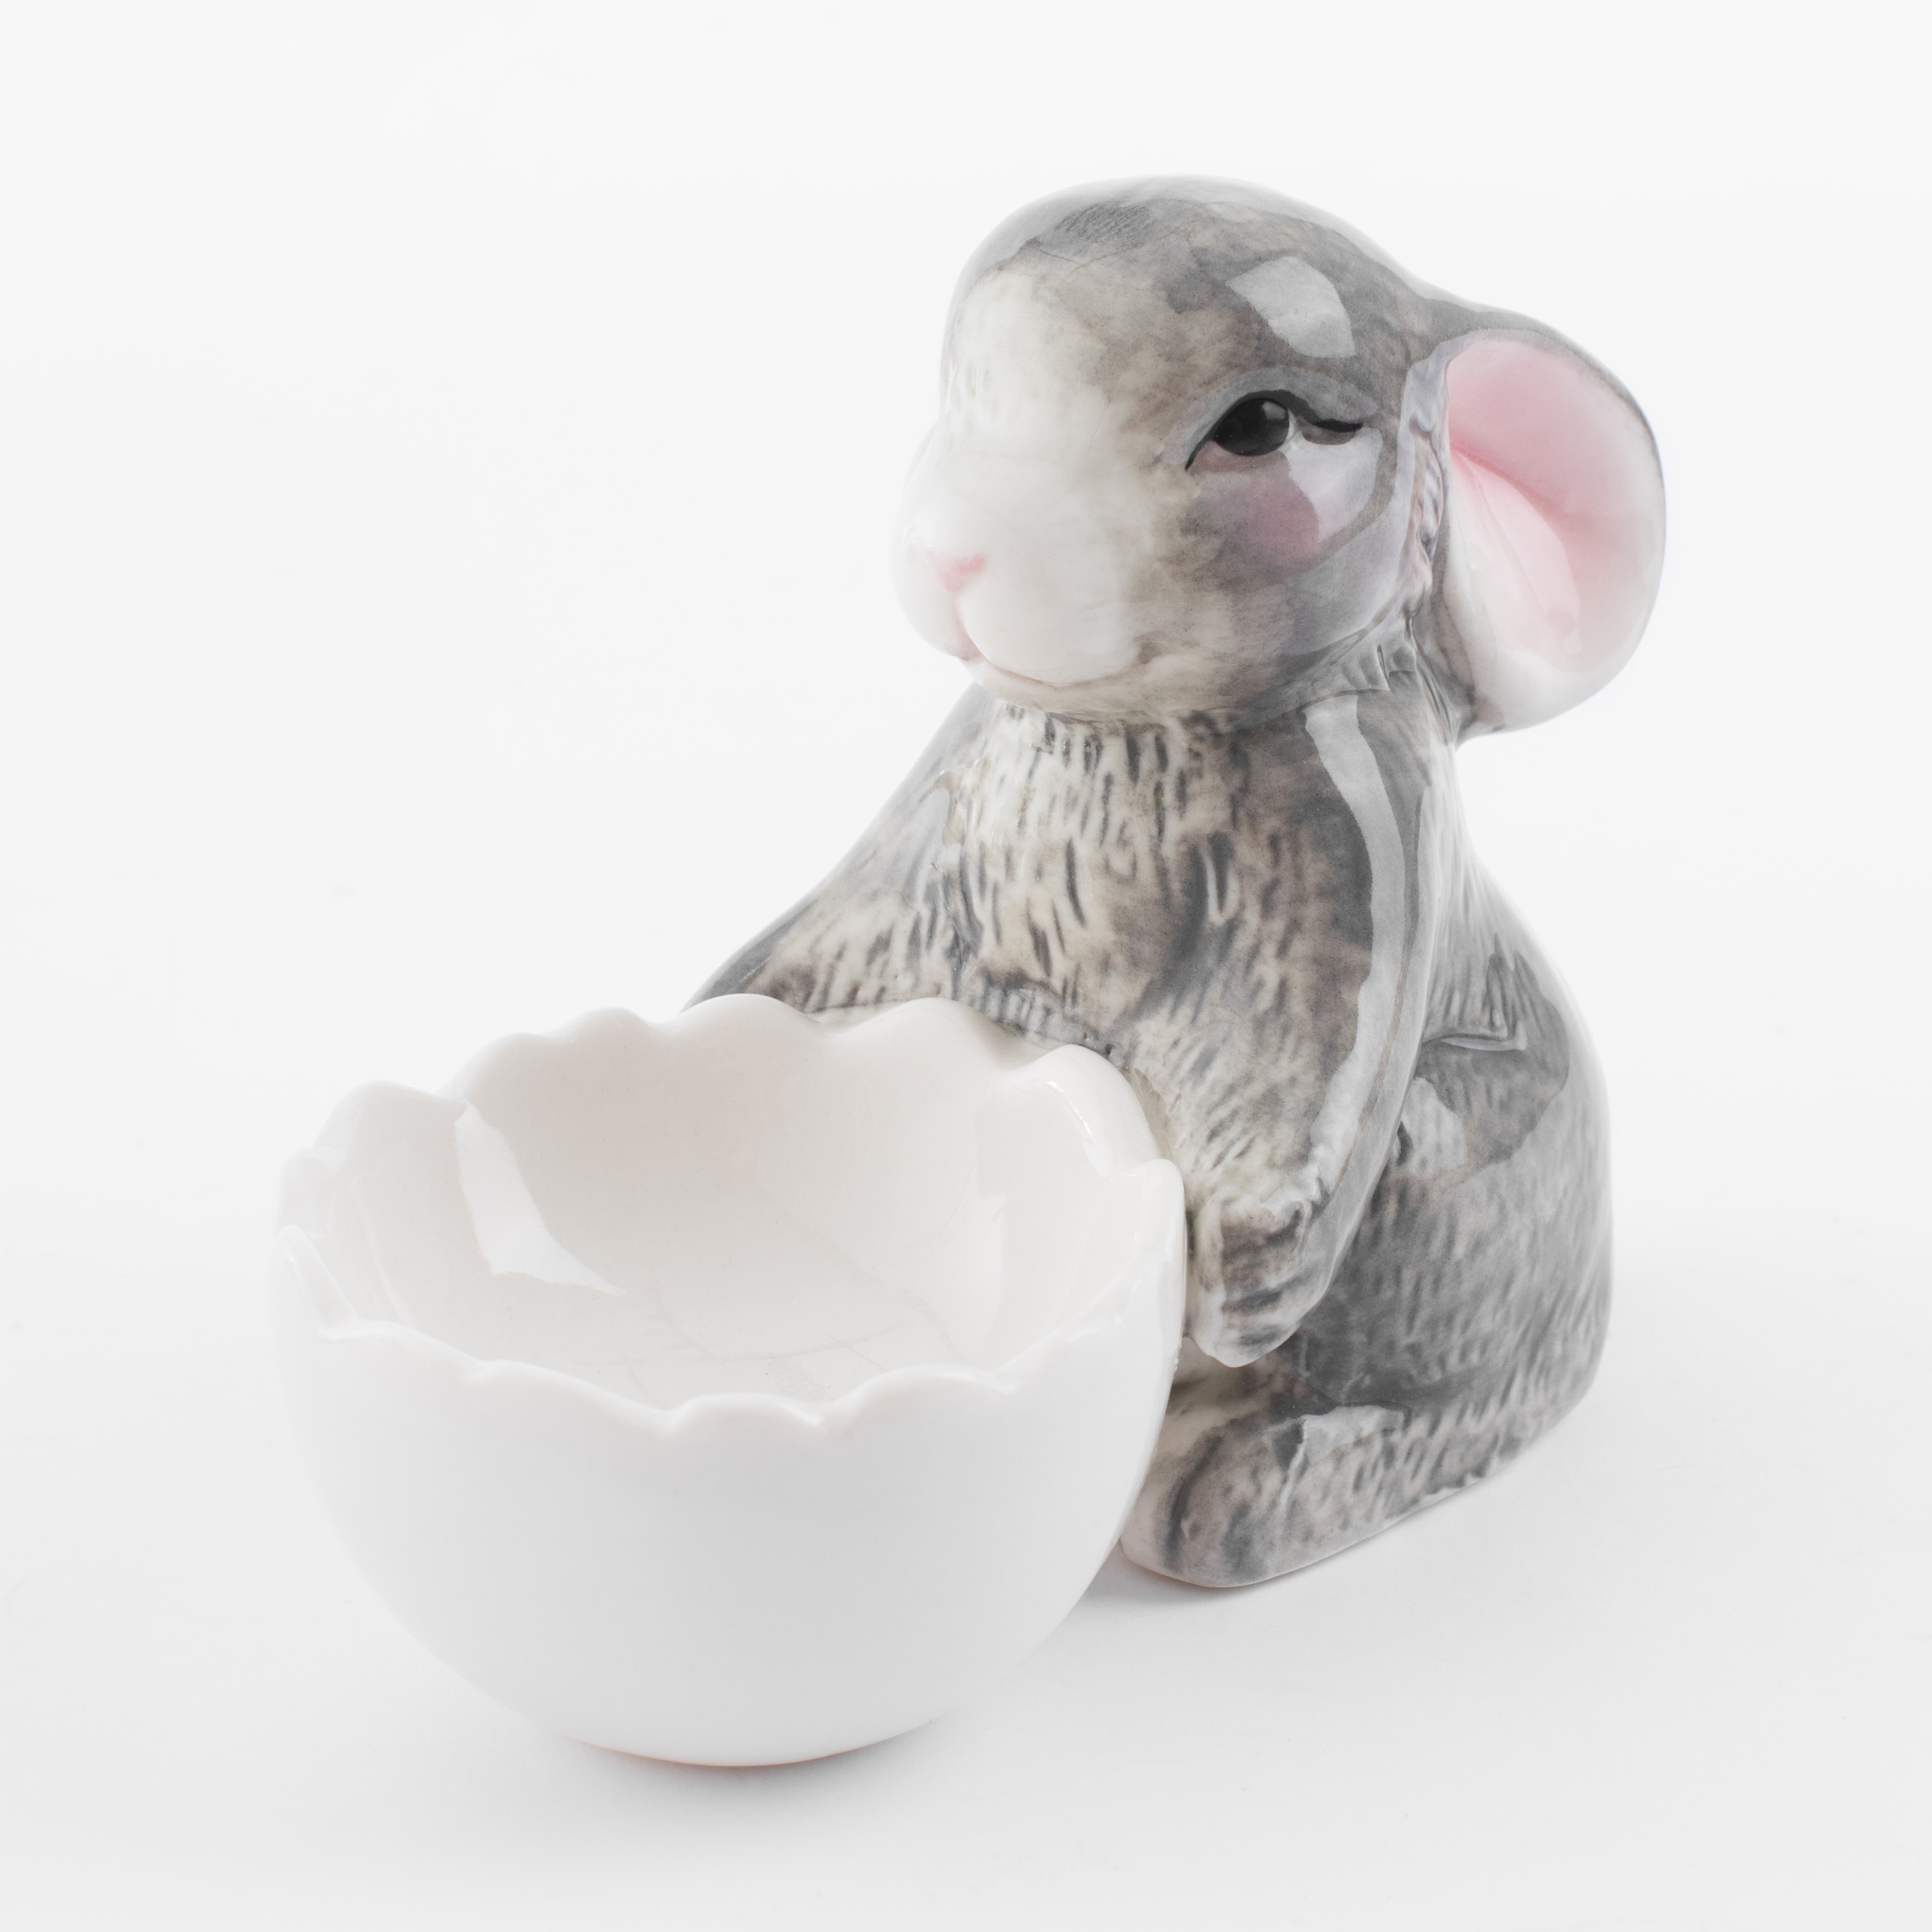 Подставка для яйца, 11 см, фарфор P, бело-серая, Кролик со скорлупой, Pure Easter изображение № 2